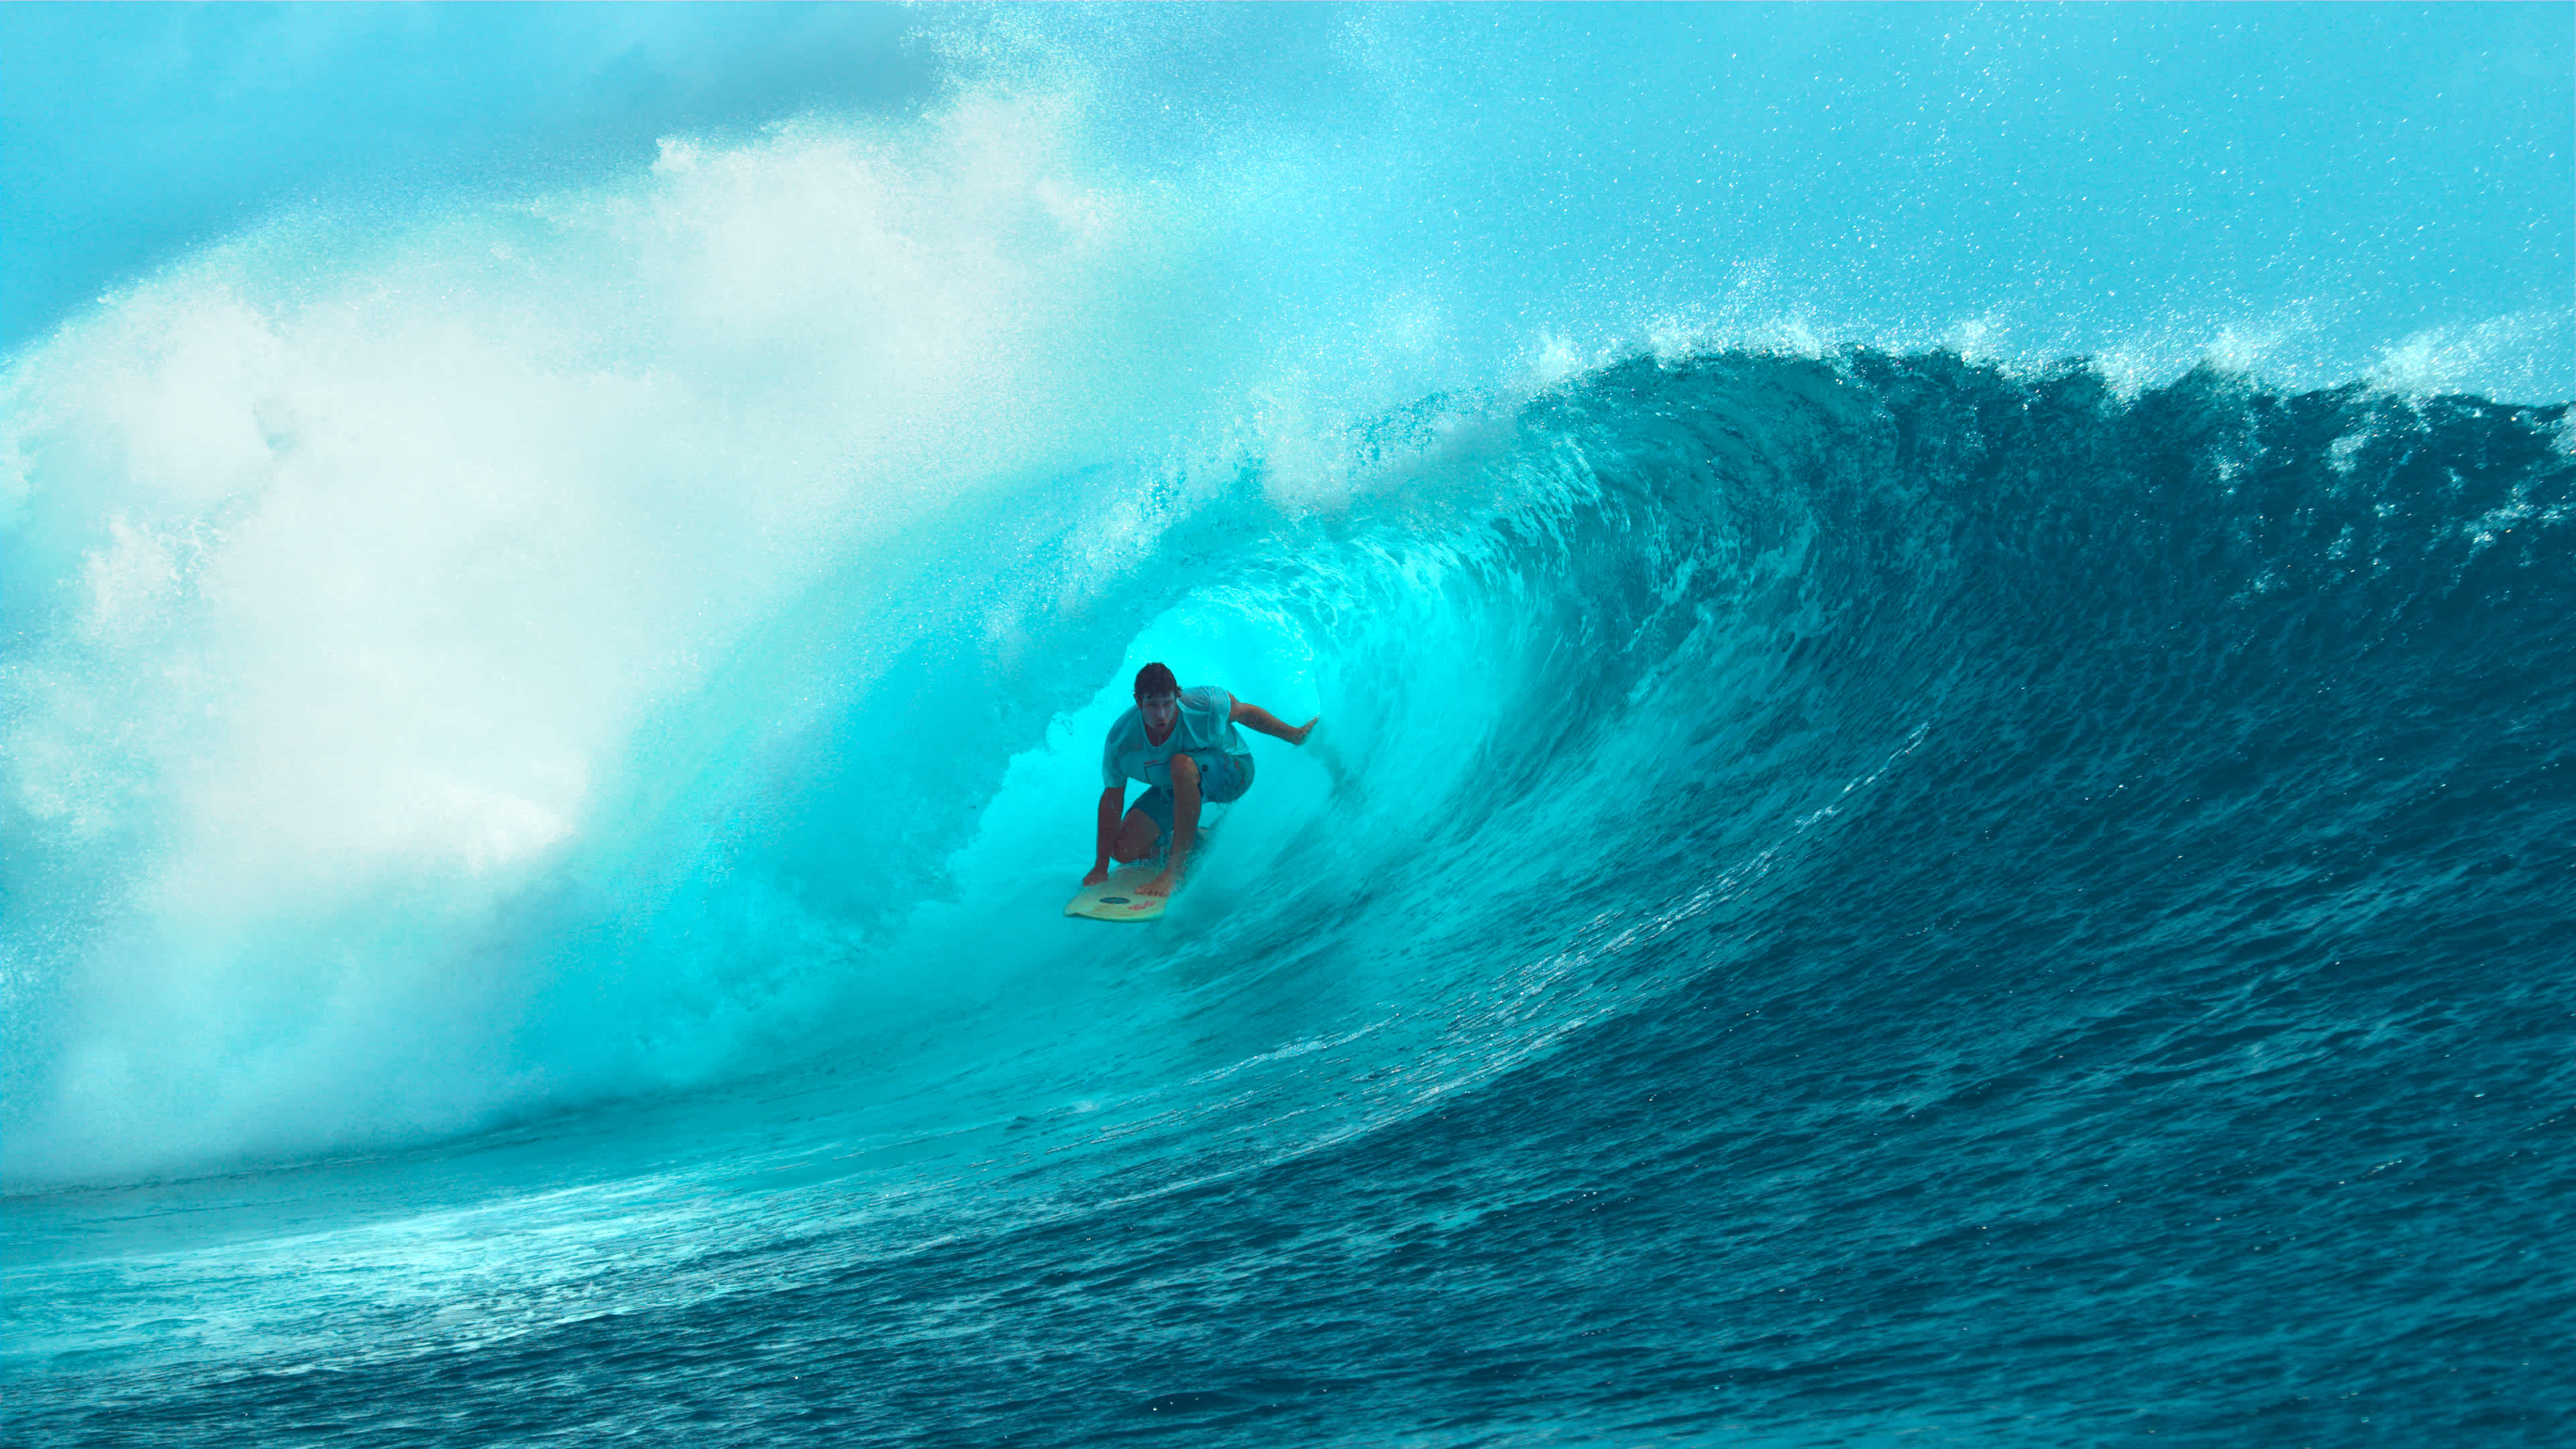 Junger Surfer, der einen spektakulären Welle reitet.

